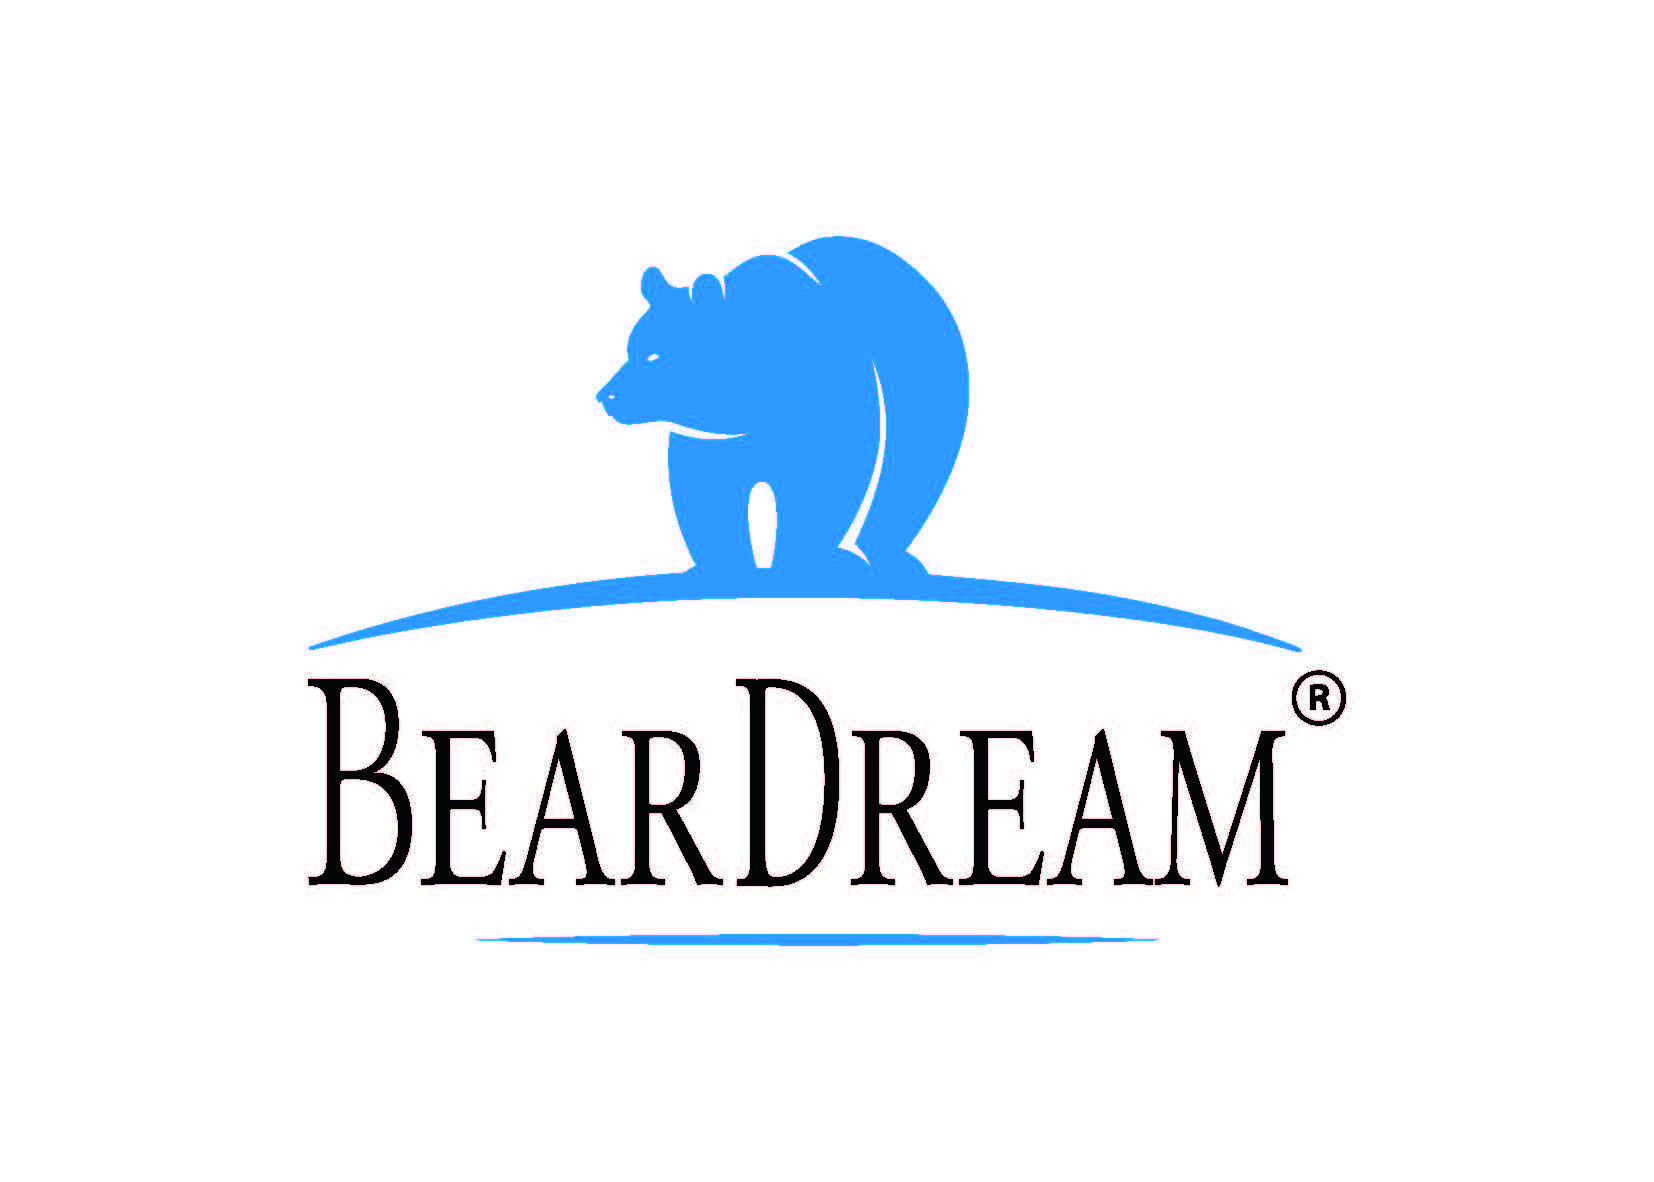 BEAR DREAM